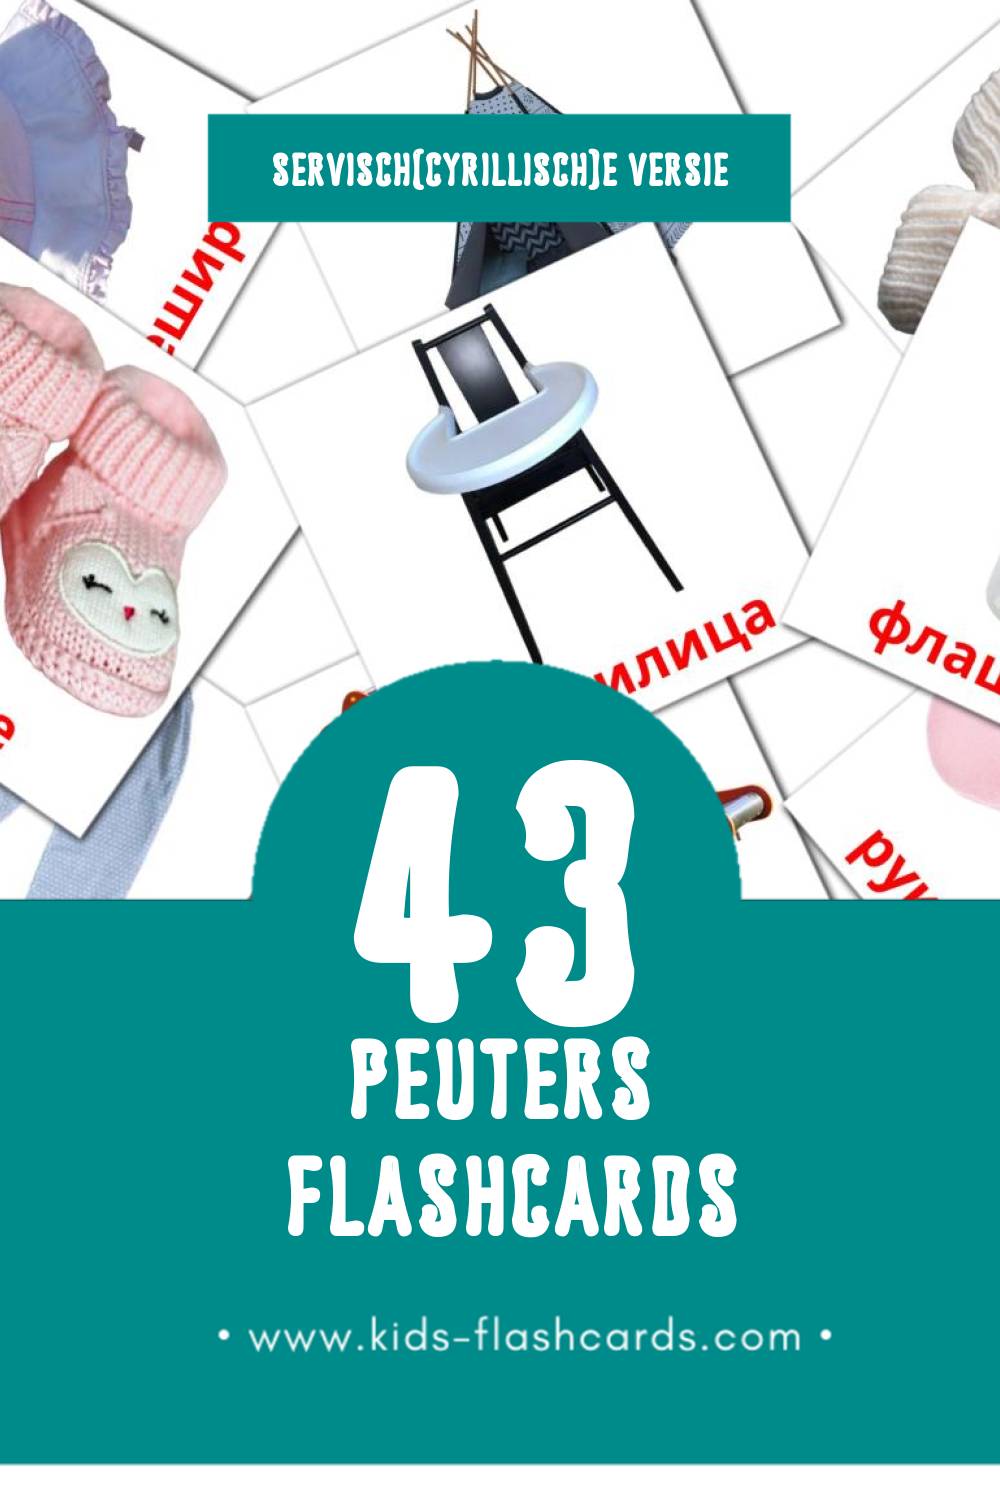 Visuele Беба Flashcards voor Kleuters (43 kaarten in het Servisch(cyrillisch))